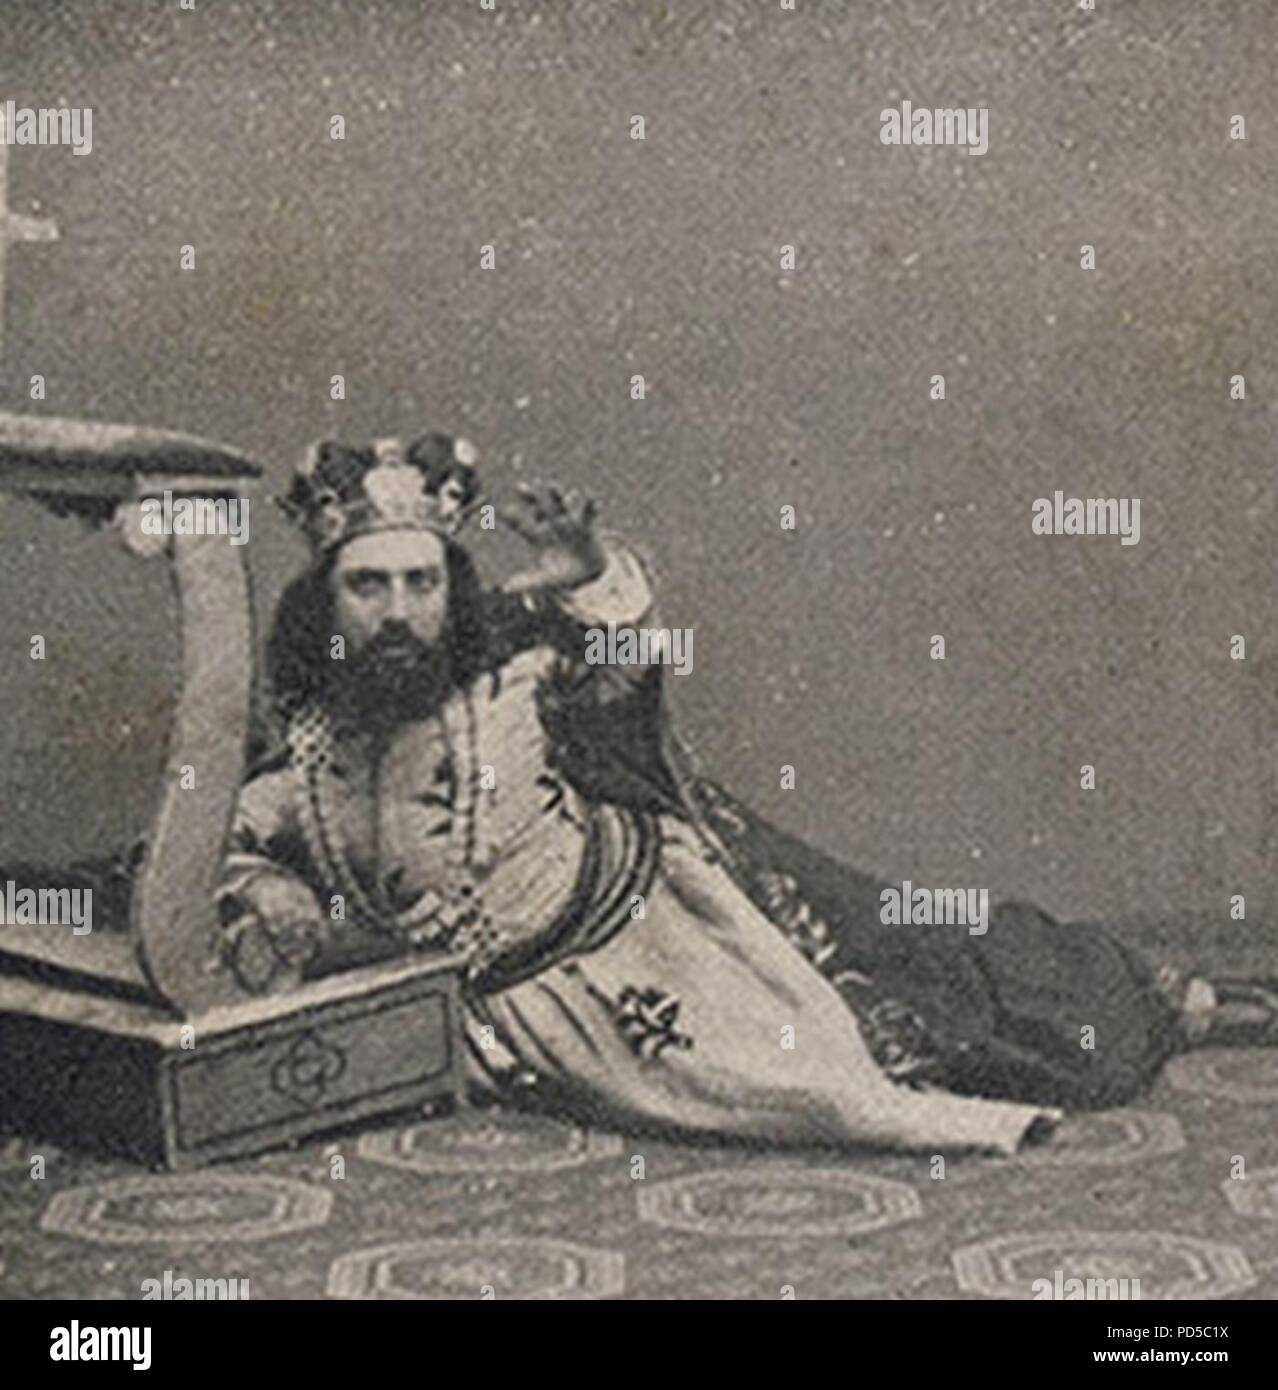 Amleto-Faccio-1871-Antonio Cotogni as the King. Stock Photo